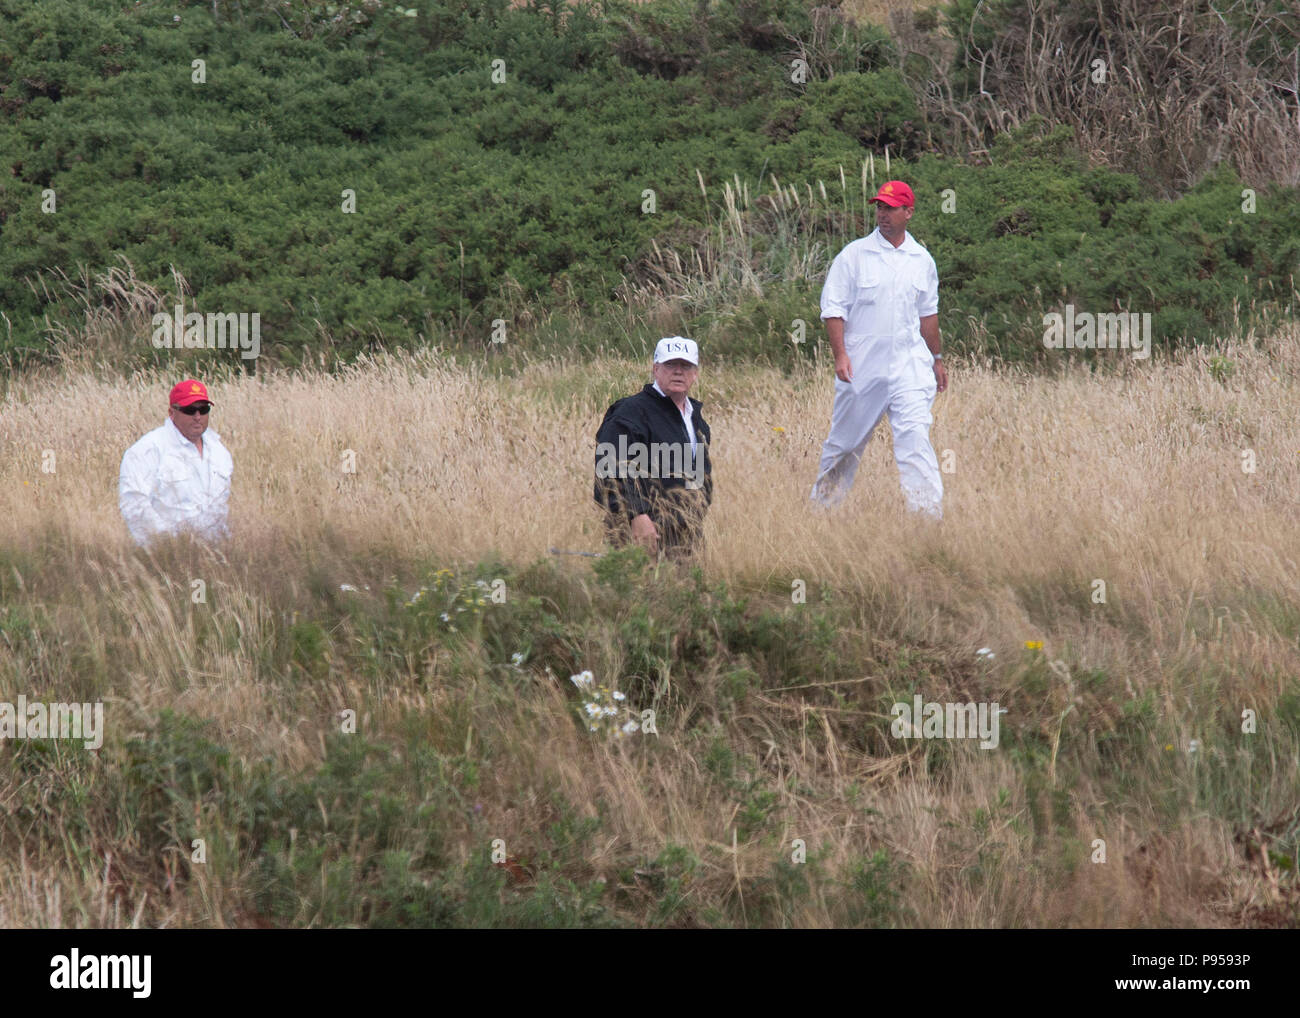 Le président l'atout de Donald Trump à Turnberry Golf resort de l'Ayrshire, Scotland, UK Banque D'Images